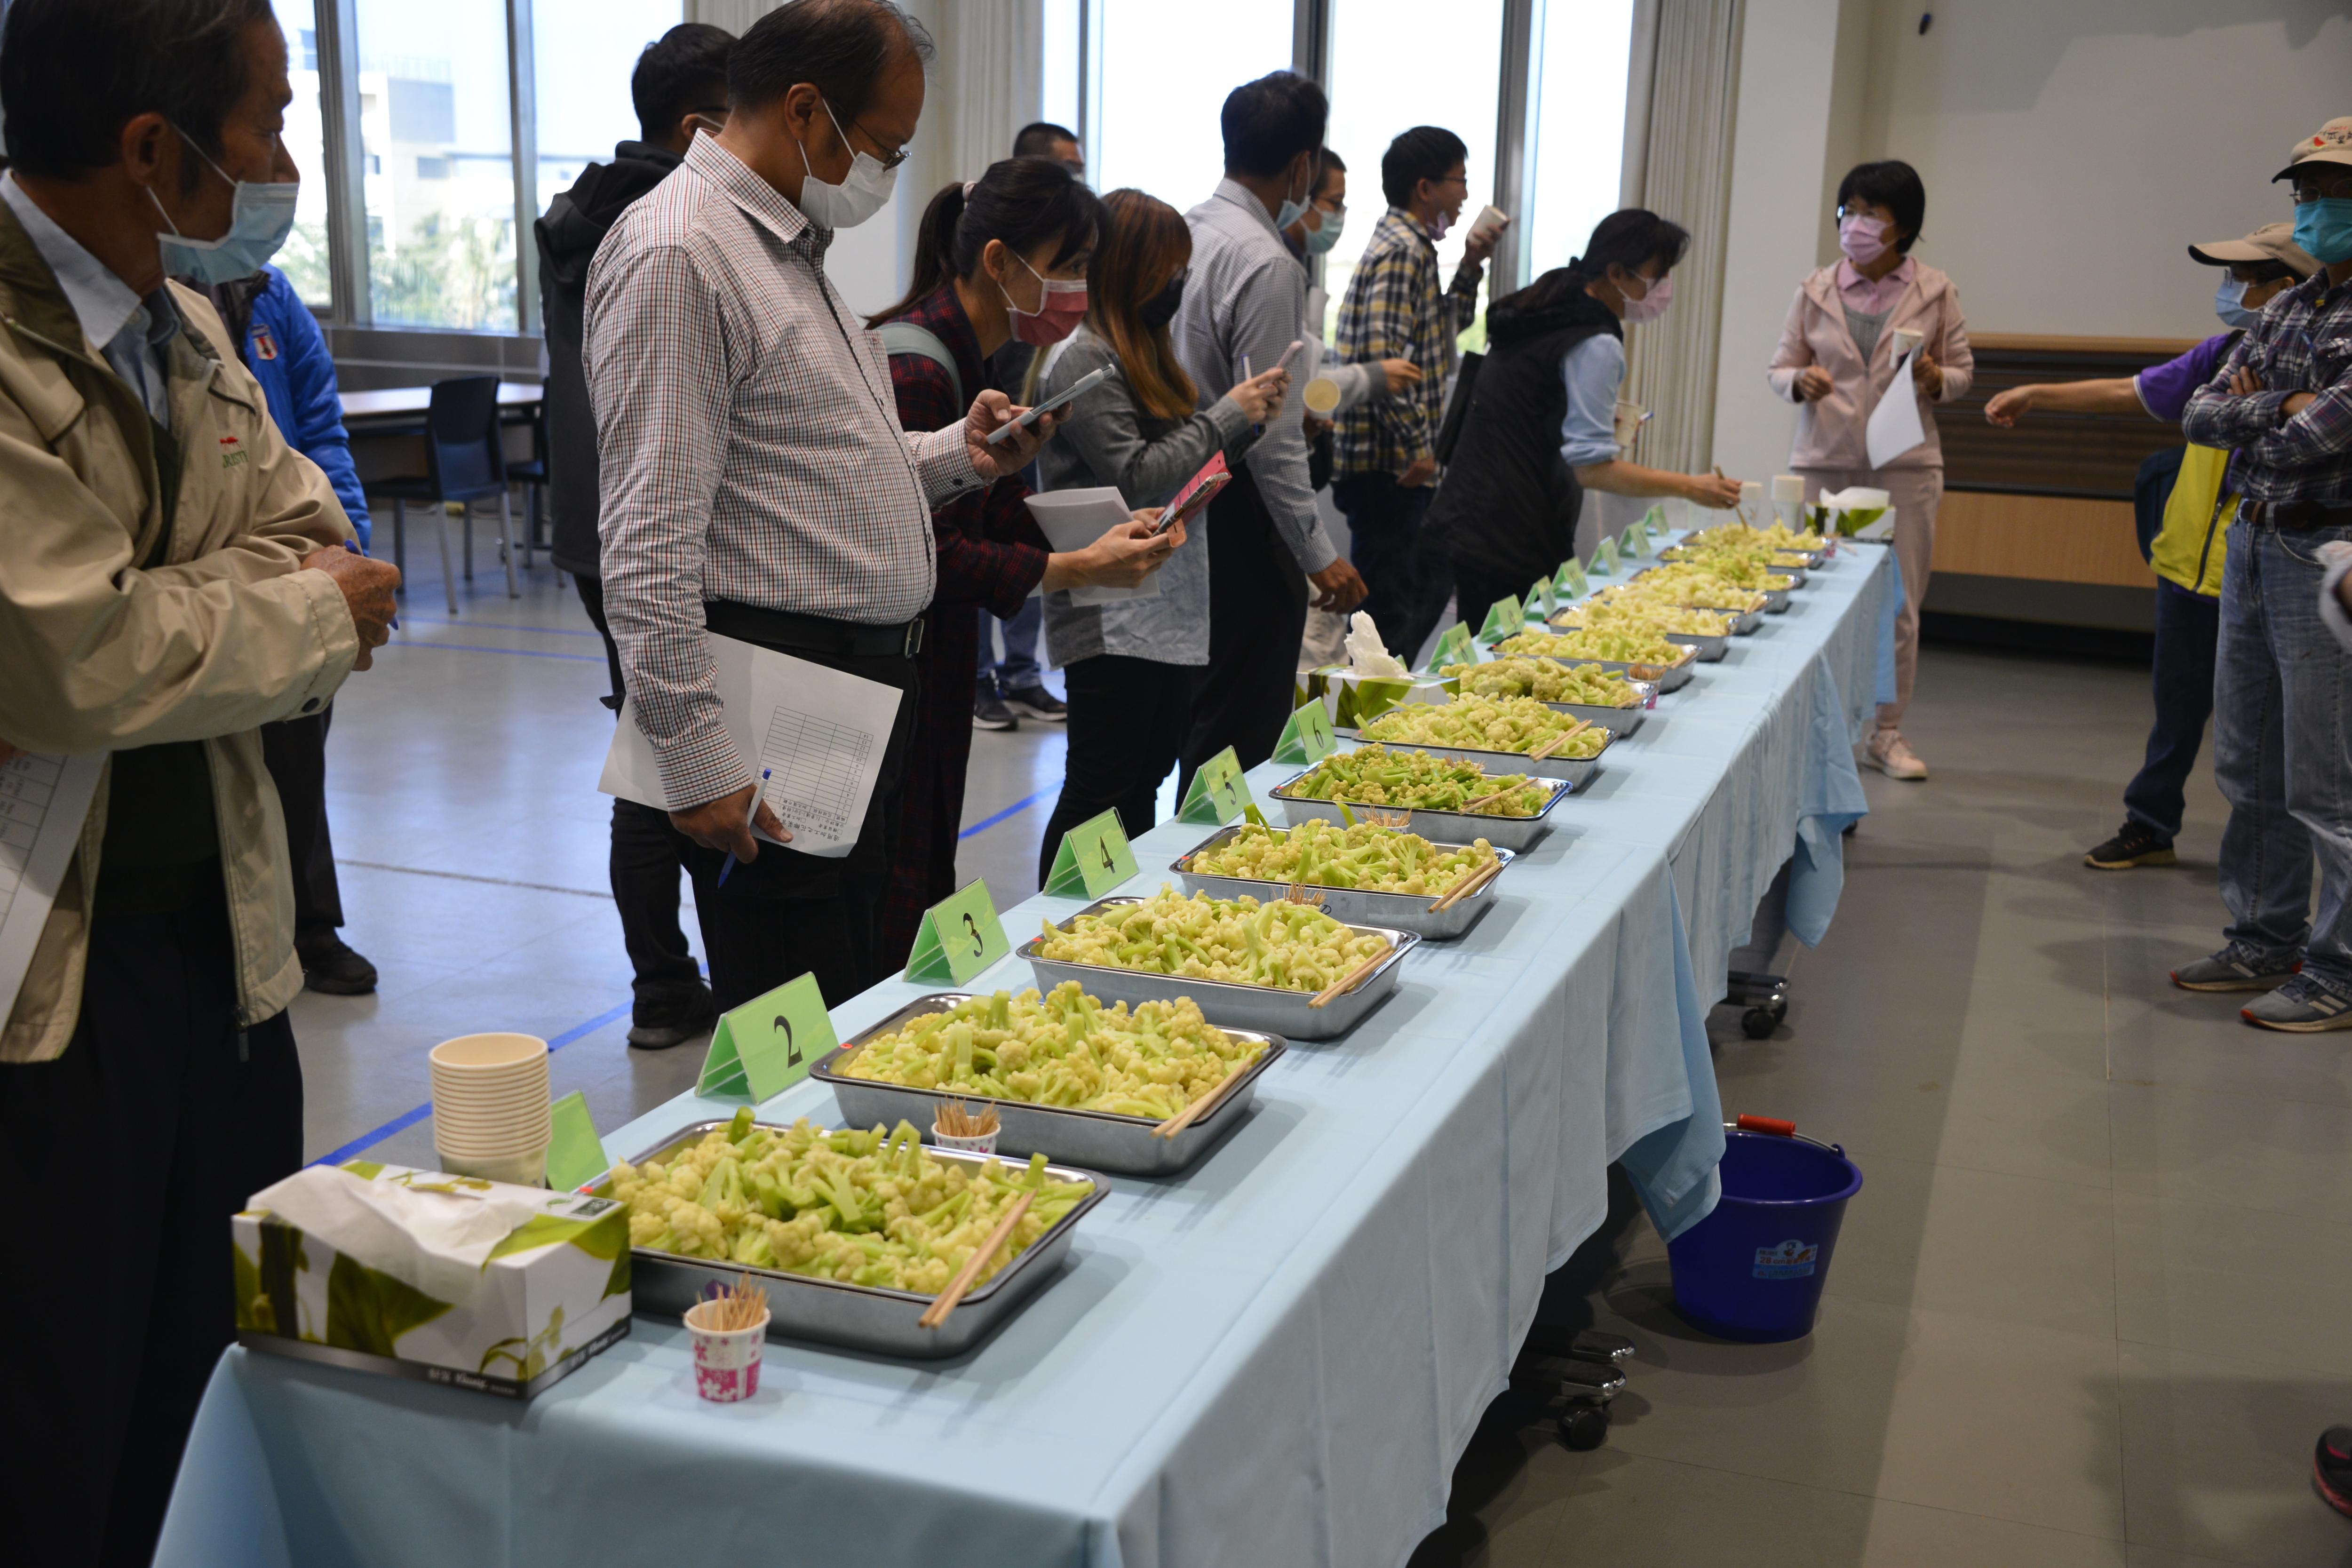 參展之14個花椰菜品種委託富士鮮品股份有限公司進行冷凍加工處理，並於會場進行官能品評活動。